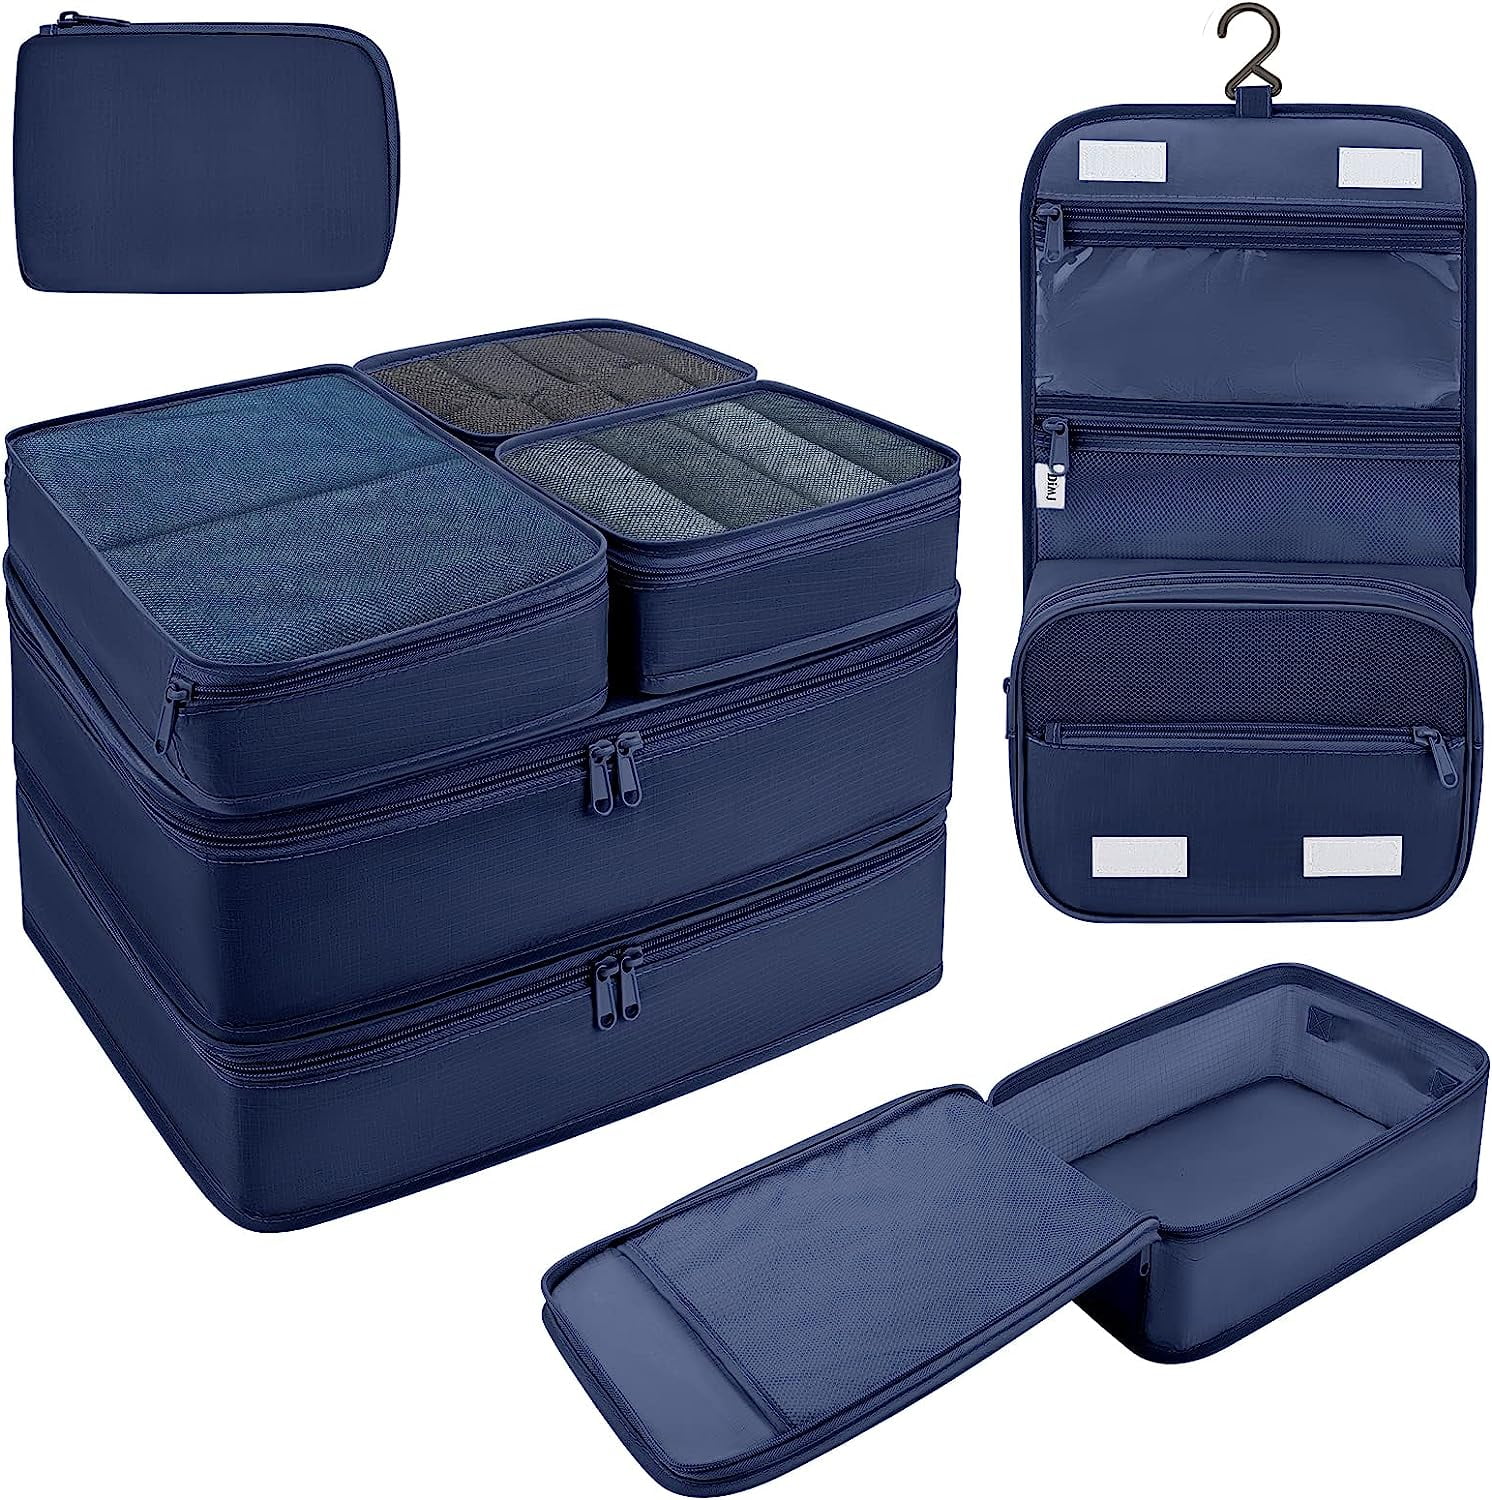 DIMJ - Organizer per valigia, cubici, da viaggio, set di 8